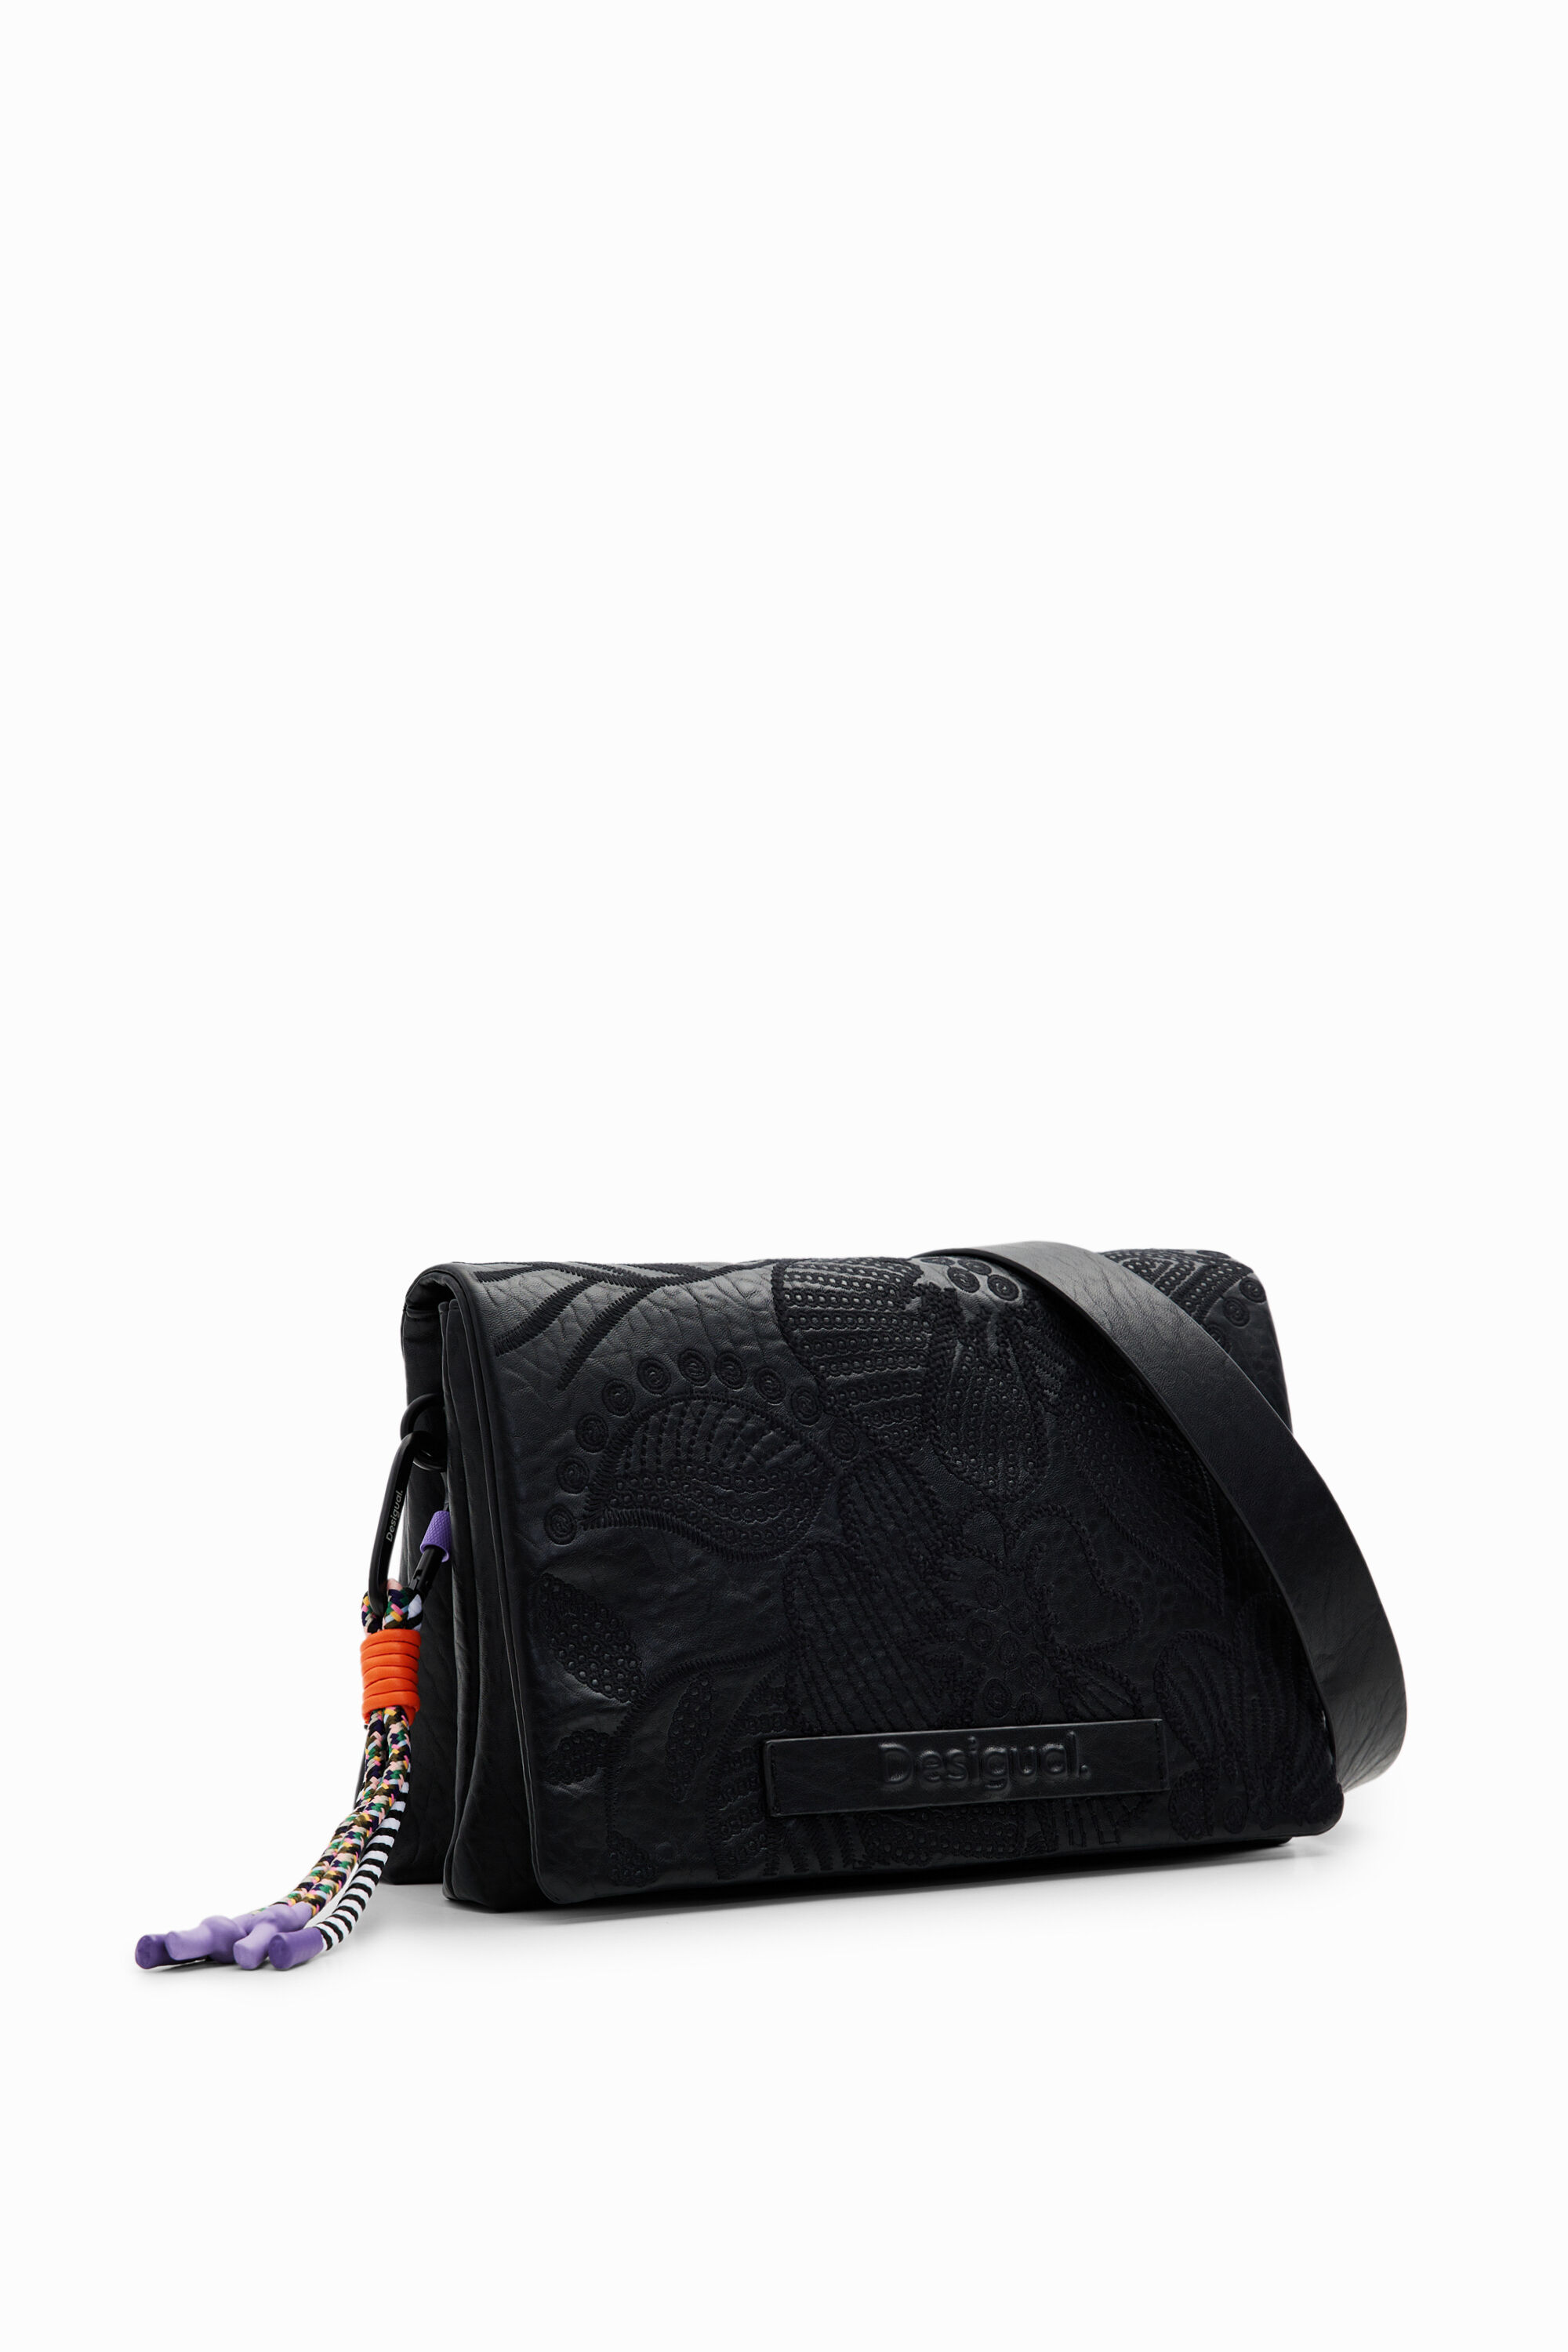 M embroidered floral crossbody bag - BLACK - U